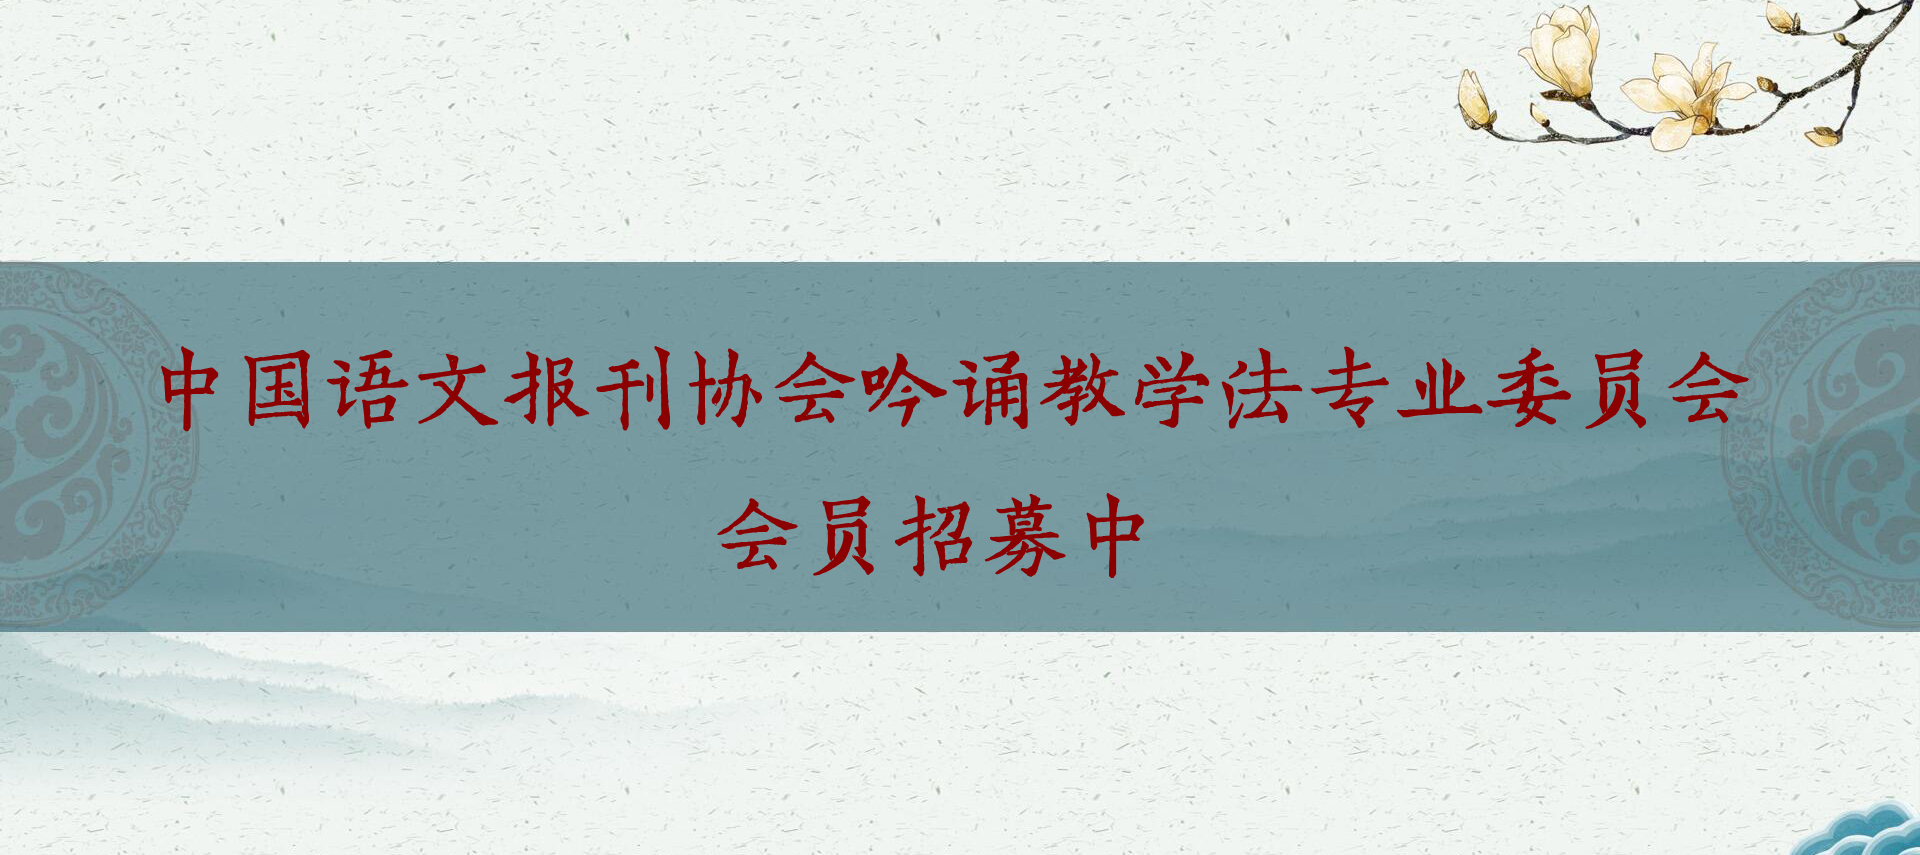 中国语文报刊协会吟诵教学法专业委员会成立了！会员招募中！